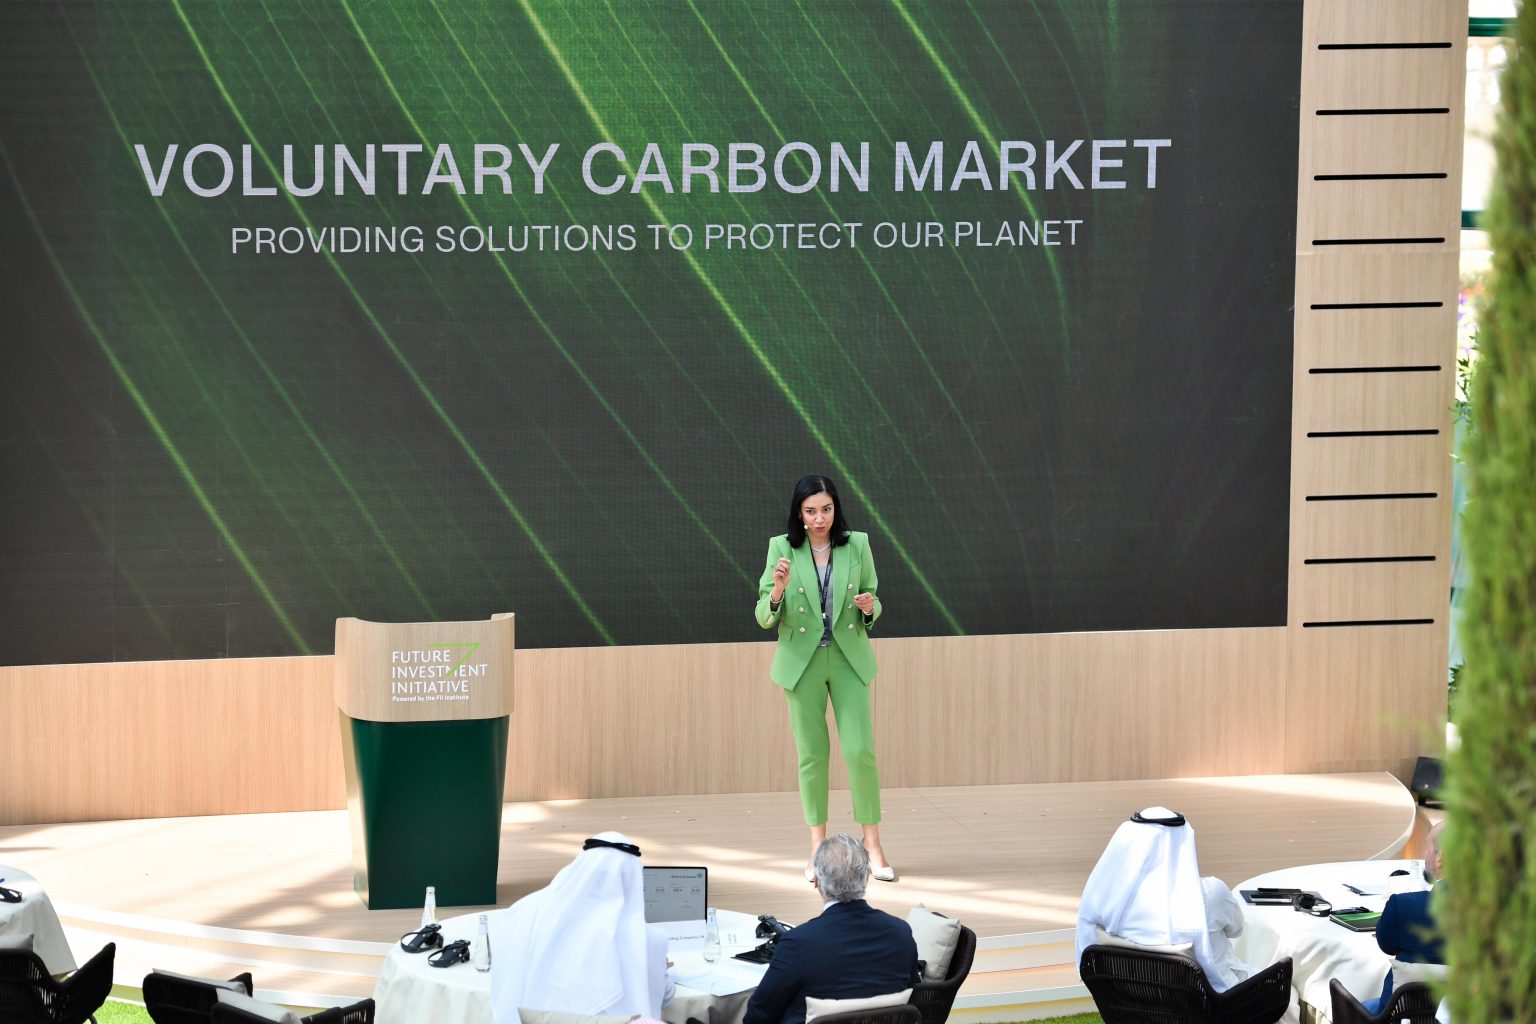 الرئيسة التنفيذي لشركة "سوق الكربون الطوعي الإقليمية" ريهام الجيزي